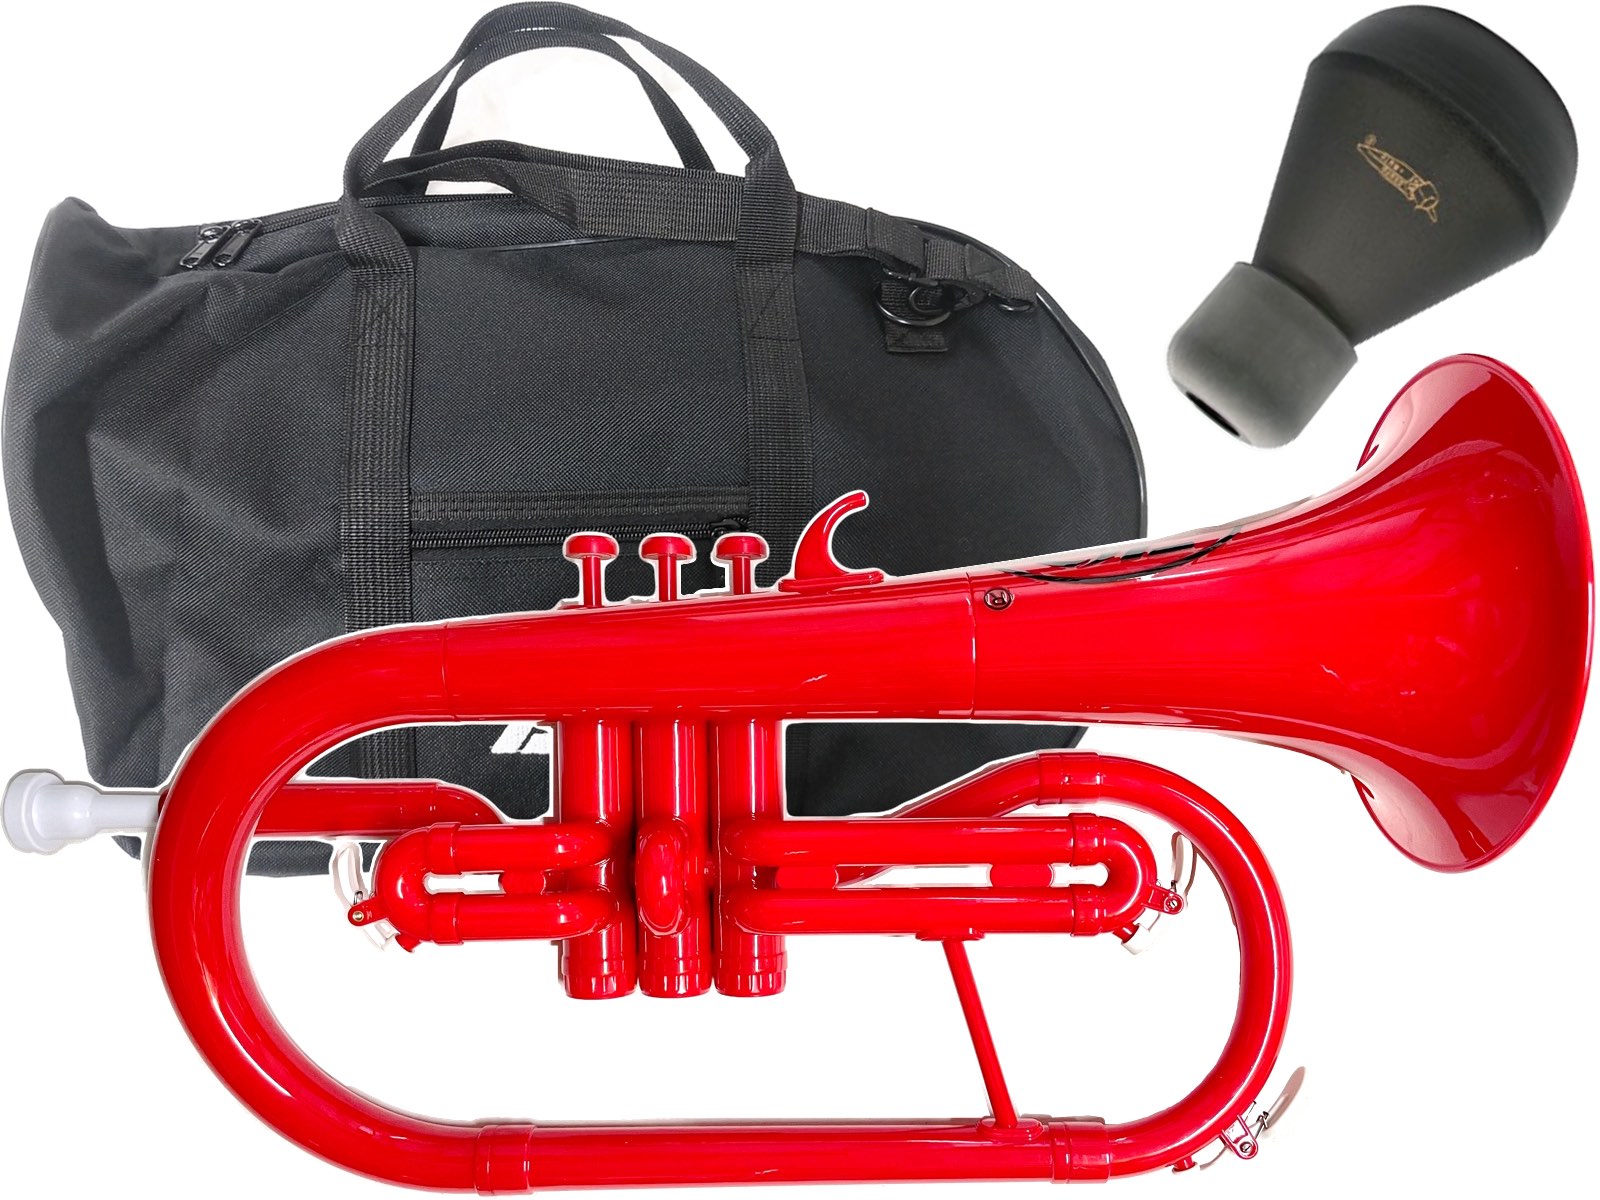 ZO ( ゼットオー ) FL-01 フリューゲルホルン レッド 新品 アウトレット プラスチック 管楽器 Flugel horn red 楽器 …